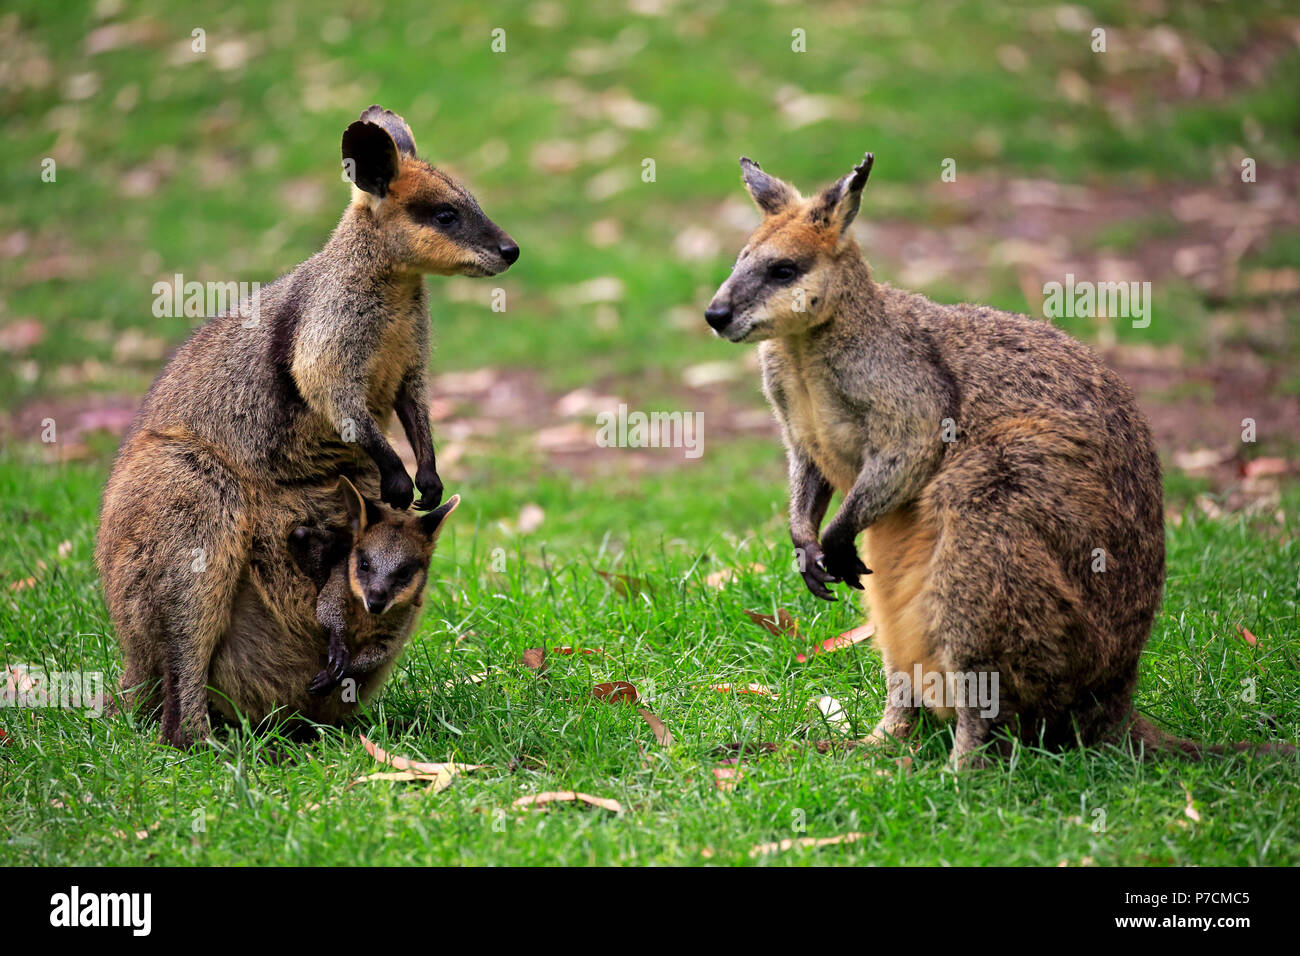 Agile Wallaby, Familie mit Joey im Beutel, männlich, weiblich, kuscheligen Creek, South Australia, Australien, (Macropus agilis) Stockfoto